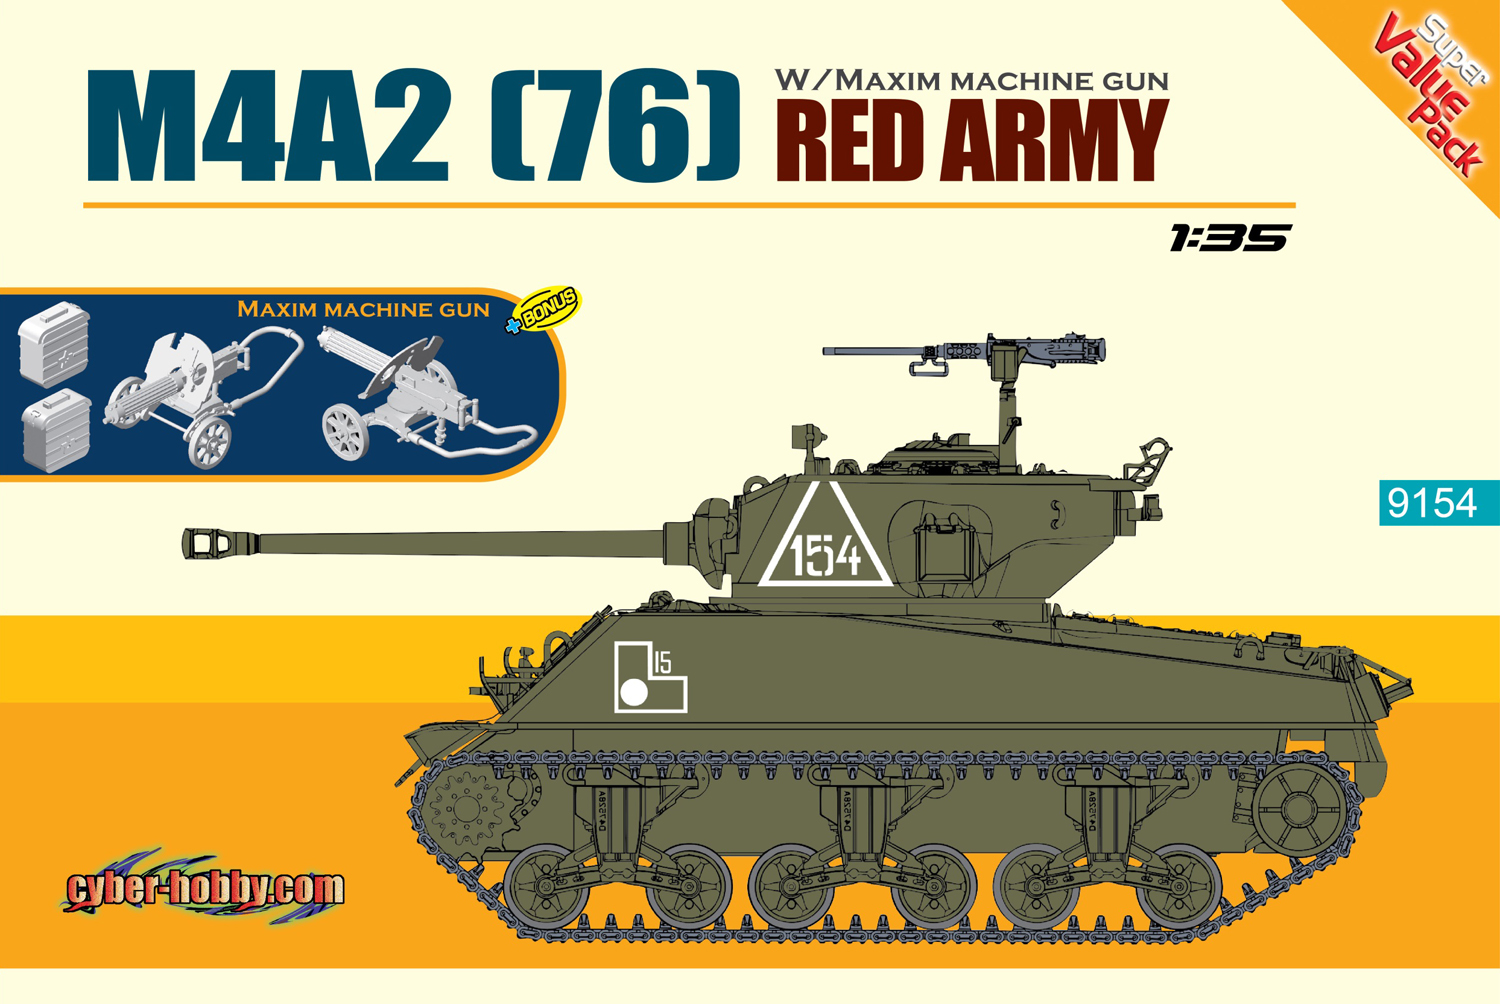 1/35 WW.II ソビエト軍 M4A2(76)シャーマン レッドアーミー